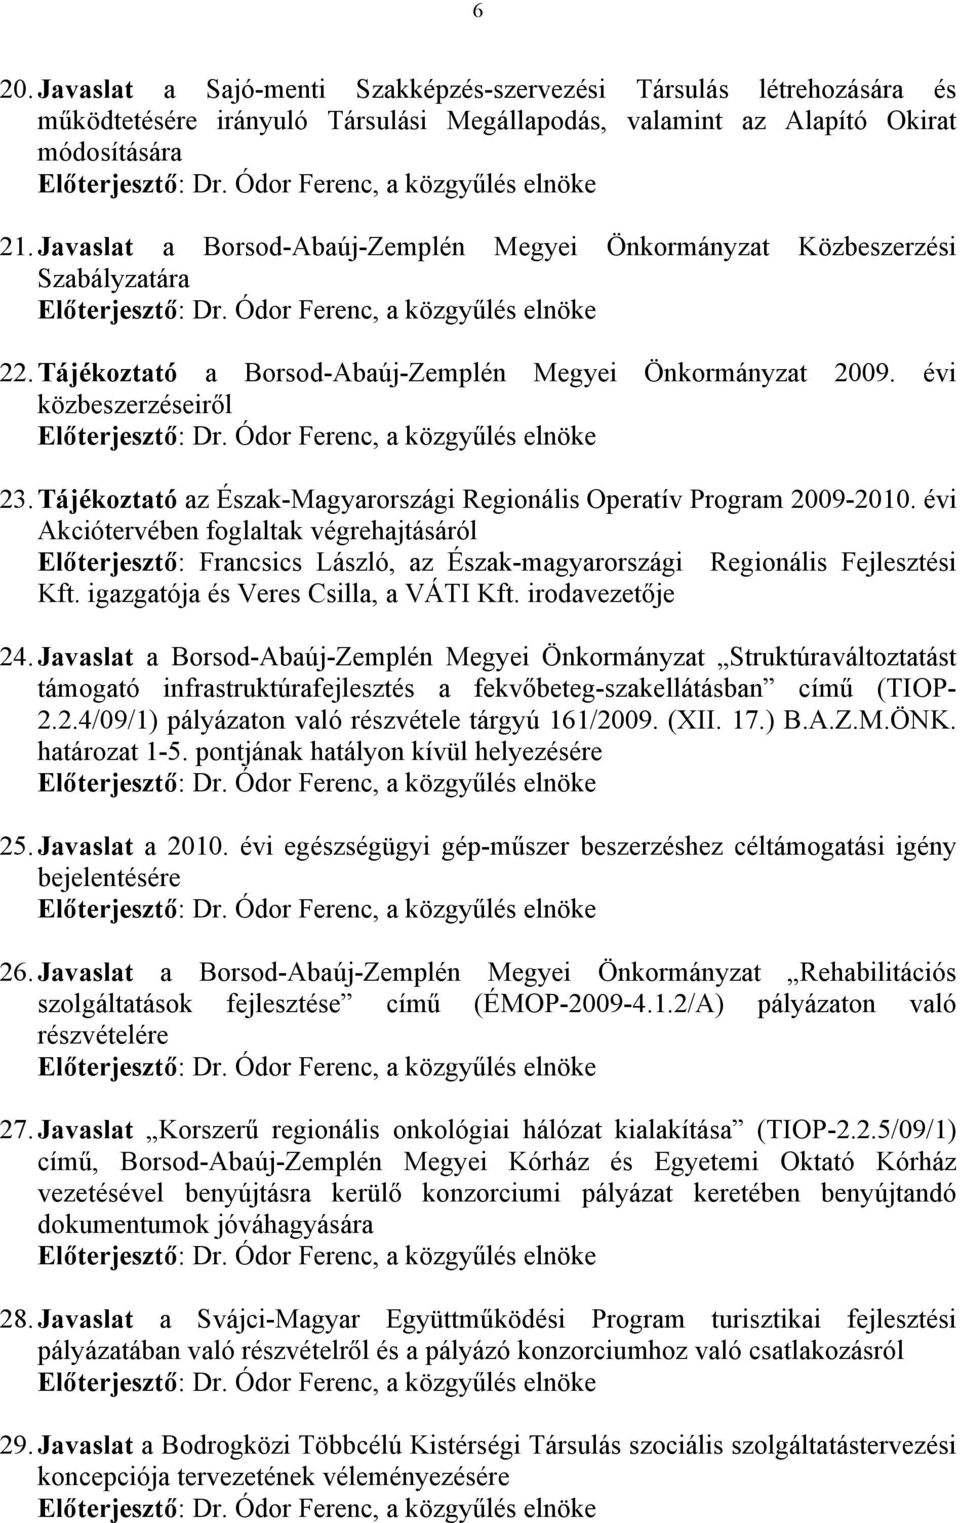 Tájékoztató a Borsod-Abaúj-Zemplén Megyei Önkormányzat 2009. évi közbeszerzéseiről Előterjesztő: Dr. Ódor Ferenc, a közgyűlés elnöke 23.